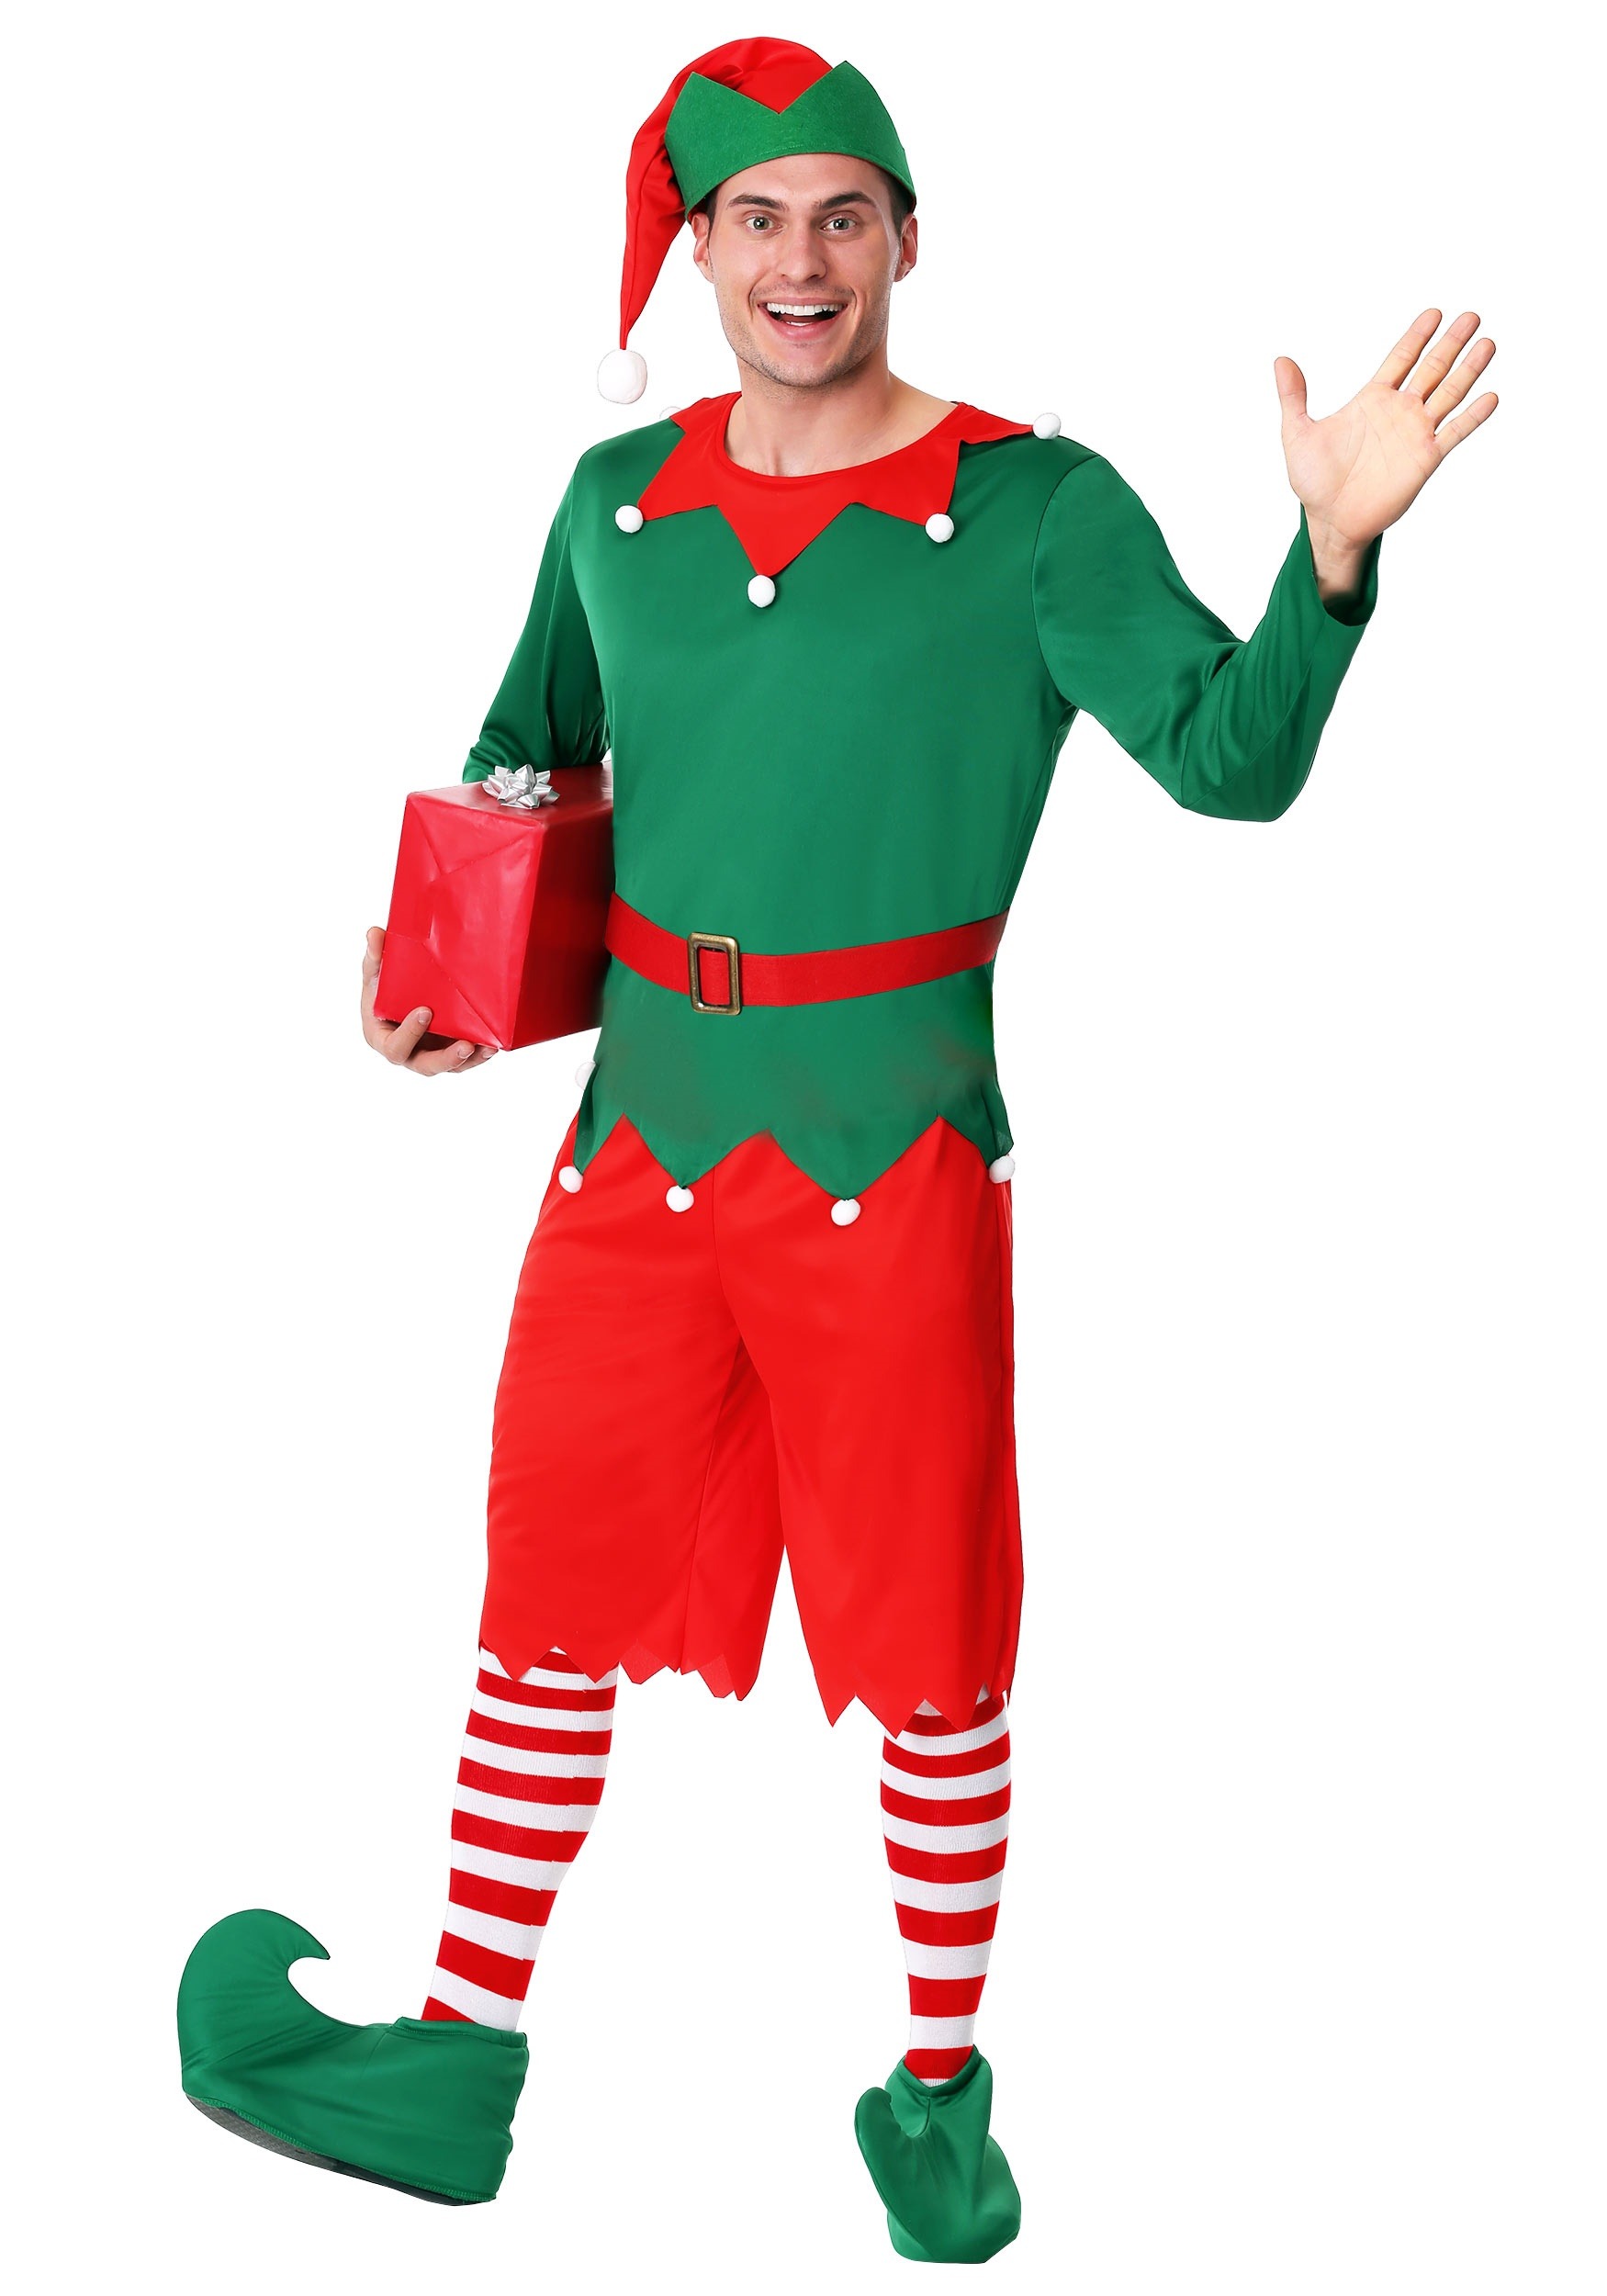 Santa's Helper Costume for Men